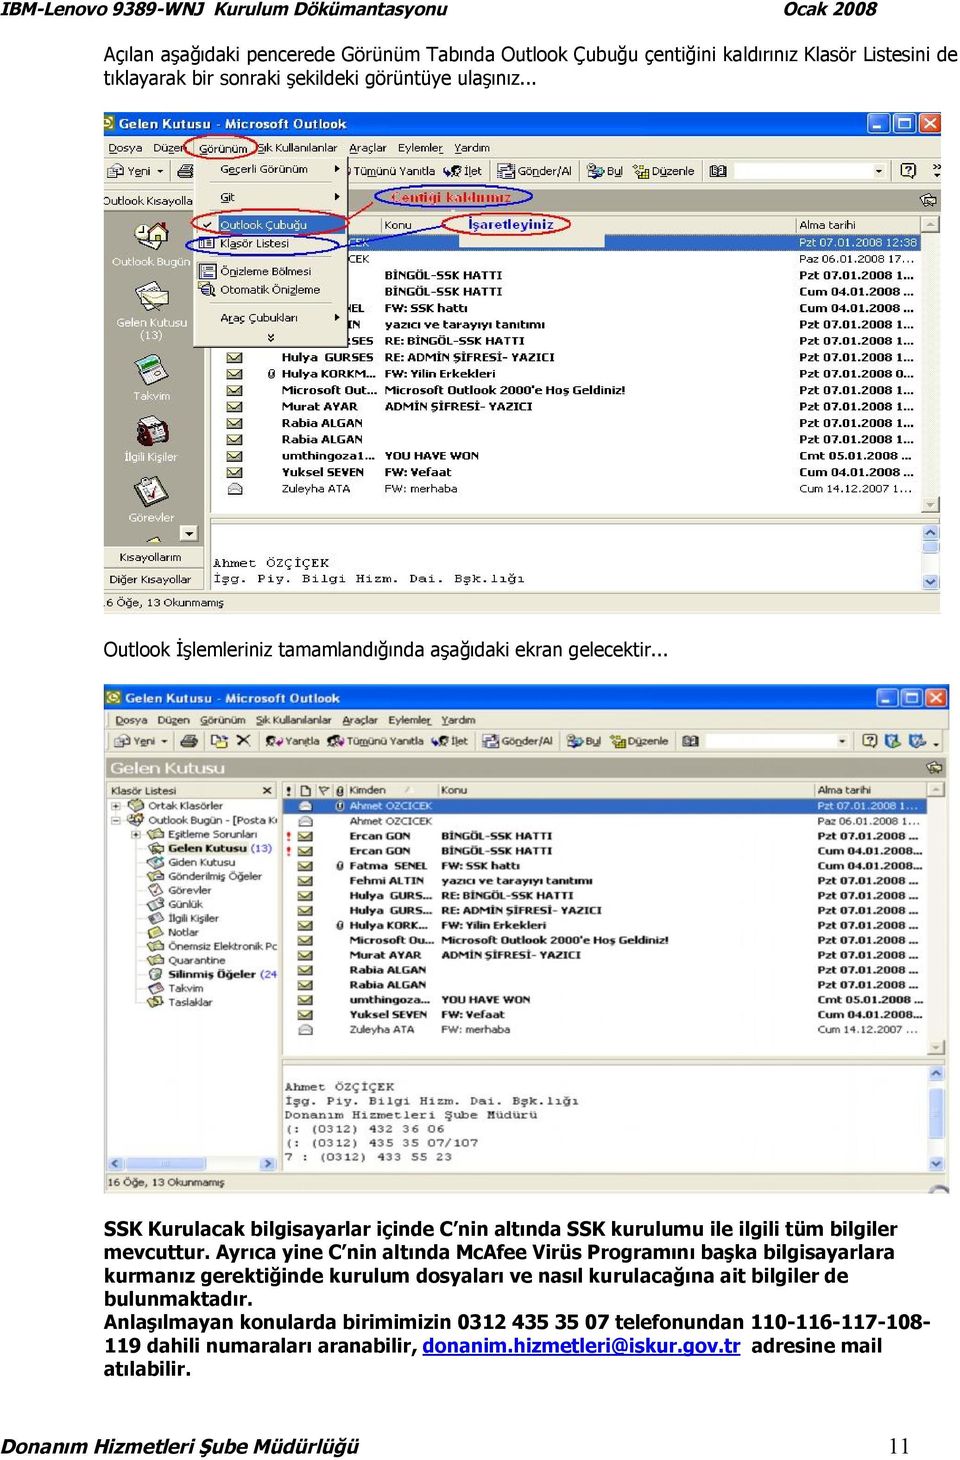 Ayrıca yine C nin altında McAfee Virüs Programını başka bilgisayarlara kurmanız gerektiğinde kurulum dosyaları ve nasıl kurulacağına ait bilgiler de bulunmaktadır.